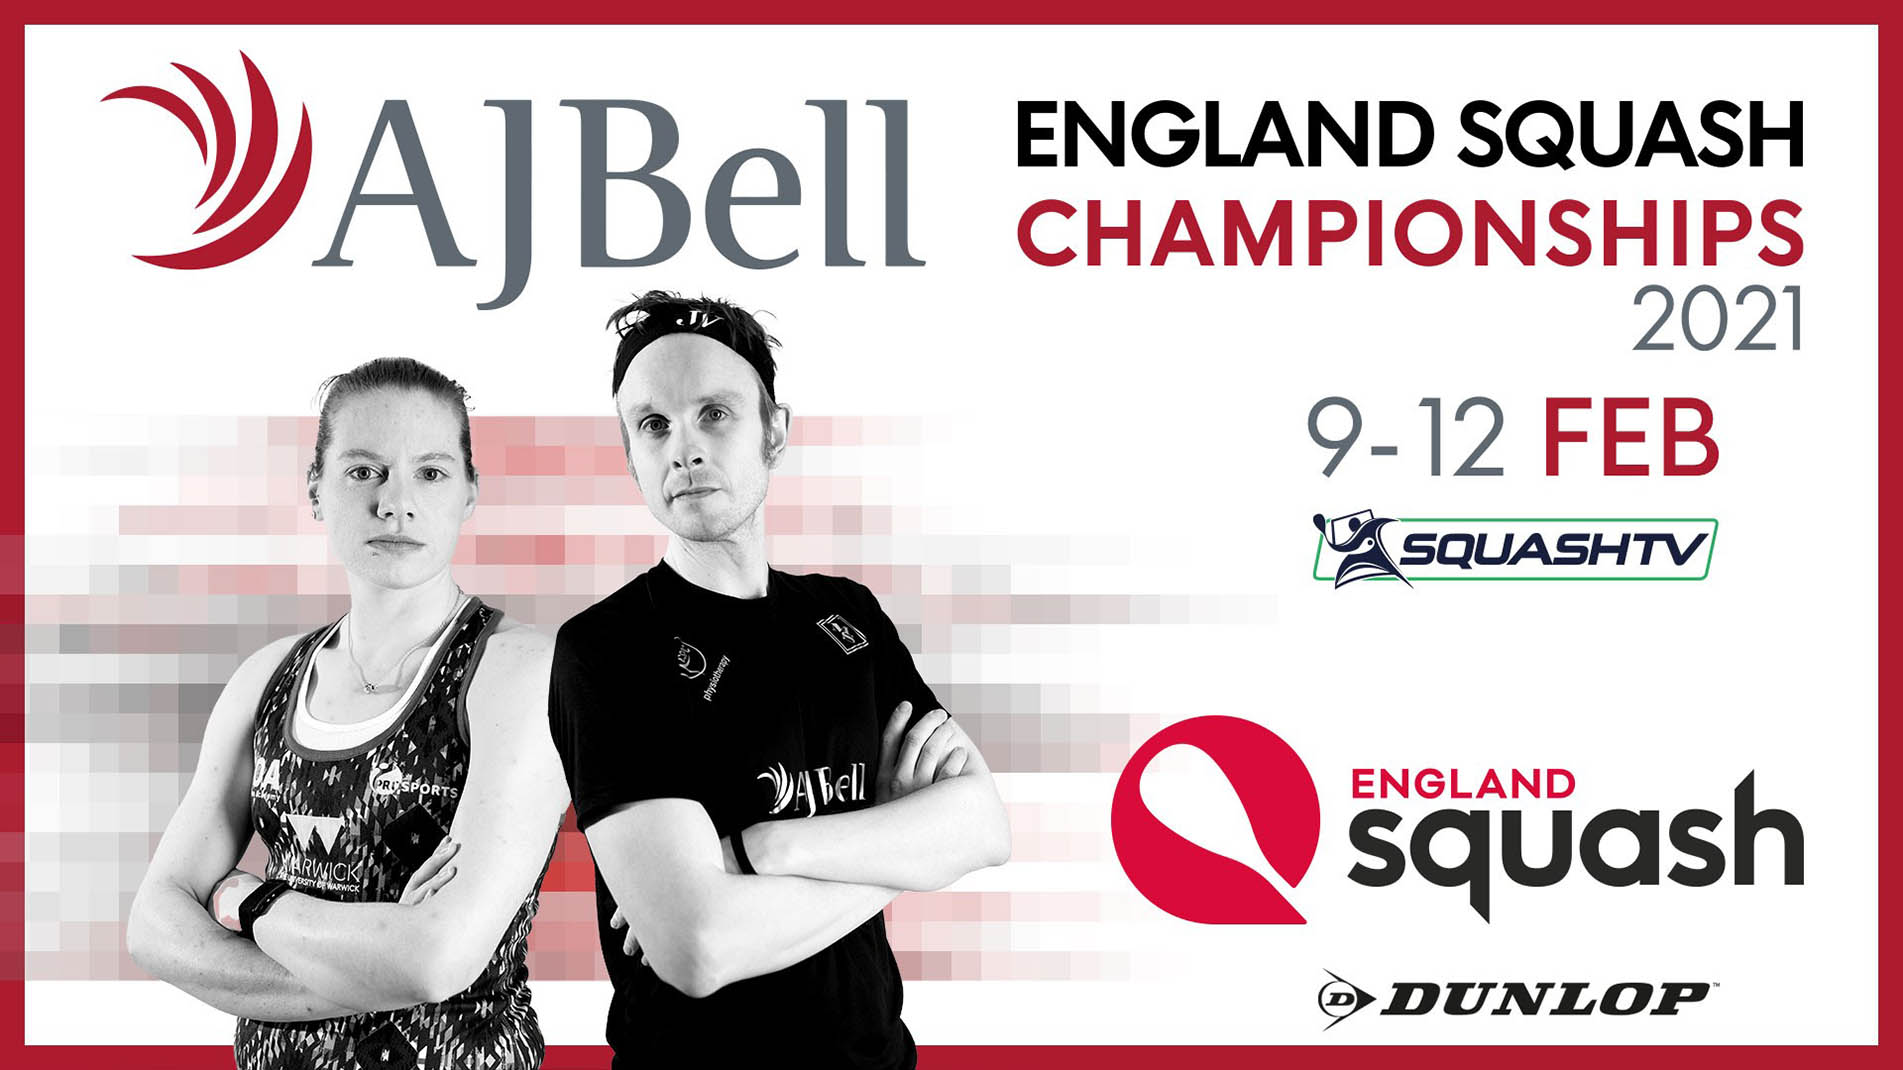 Aj Bell England Squash Championships